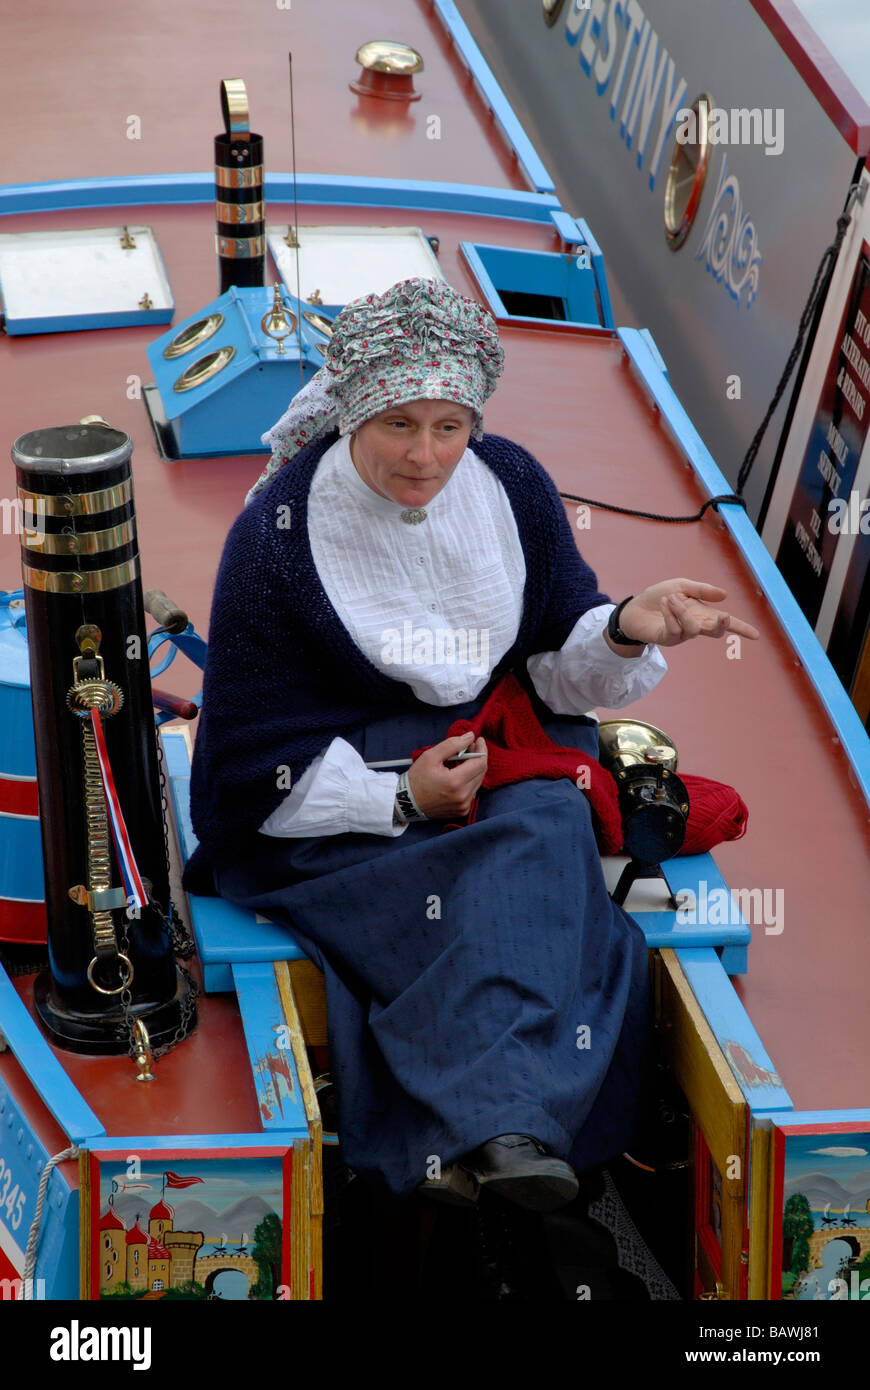 Femme en costume traditionnel victorien 15-04 avec son tricot assis sur l'éclosion de travailler 15-04, Londres, Angleterre Banque D'Images